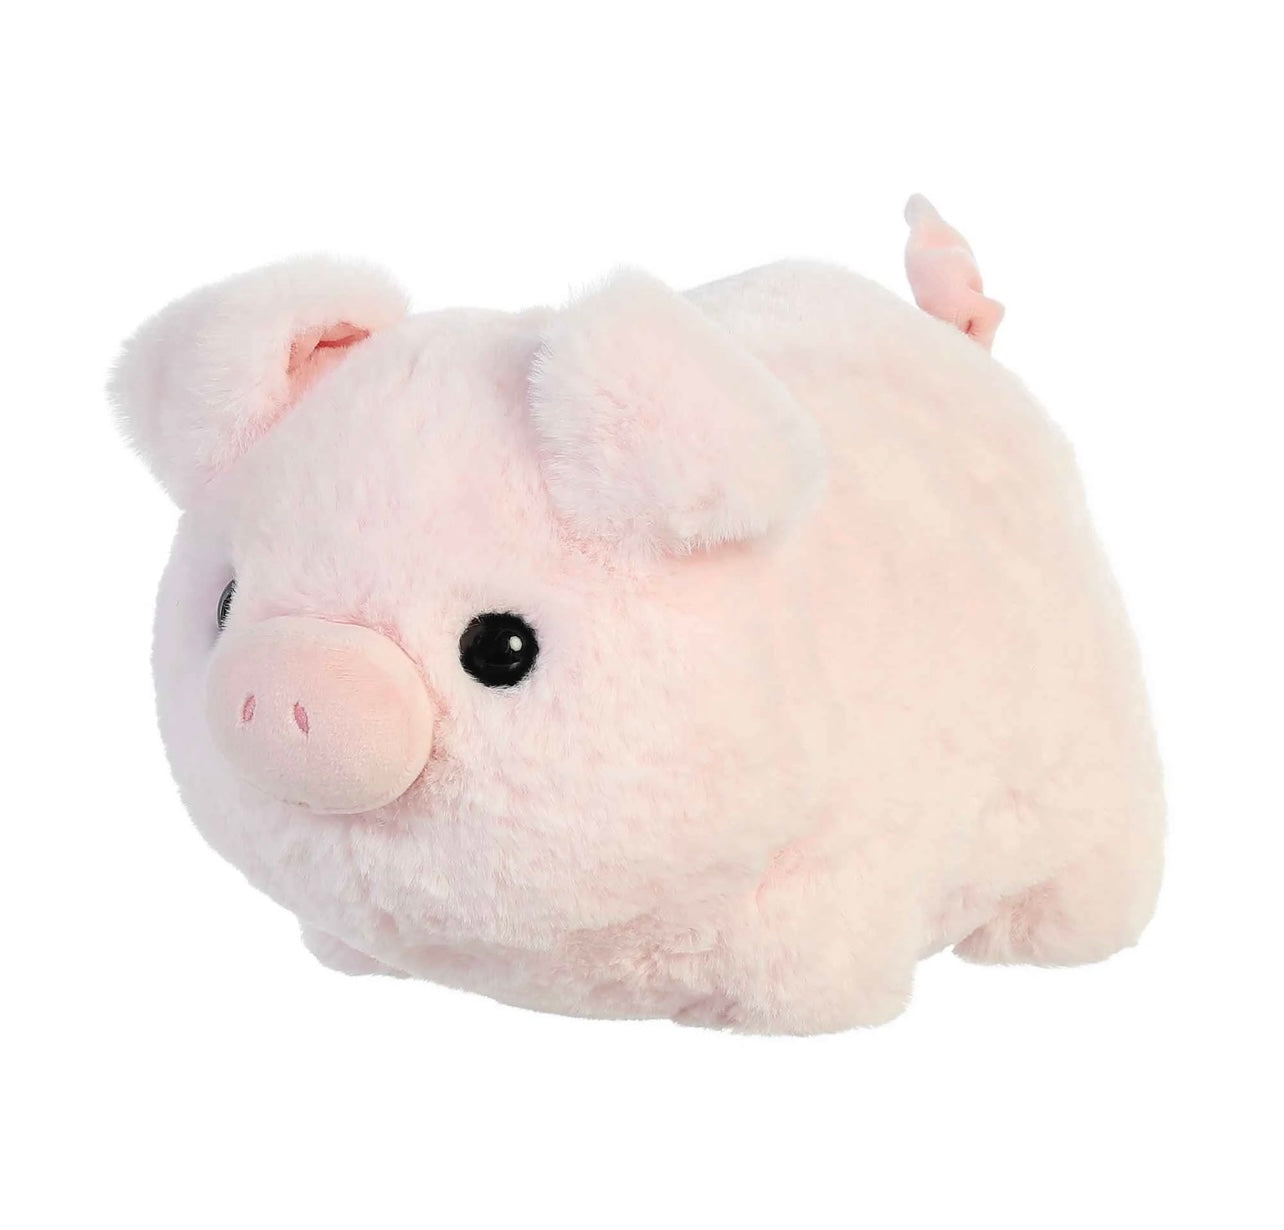 Spudsters Cutie Pig